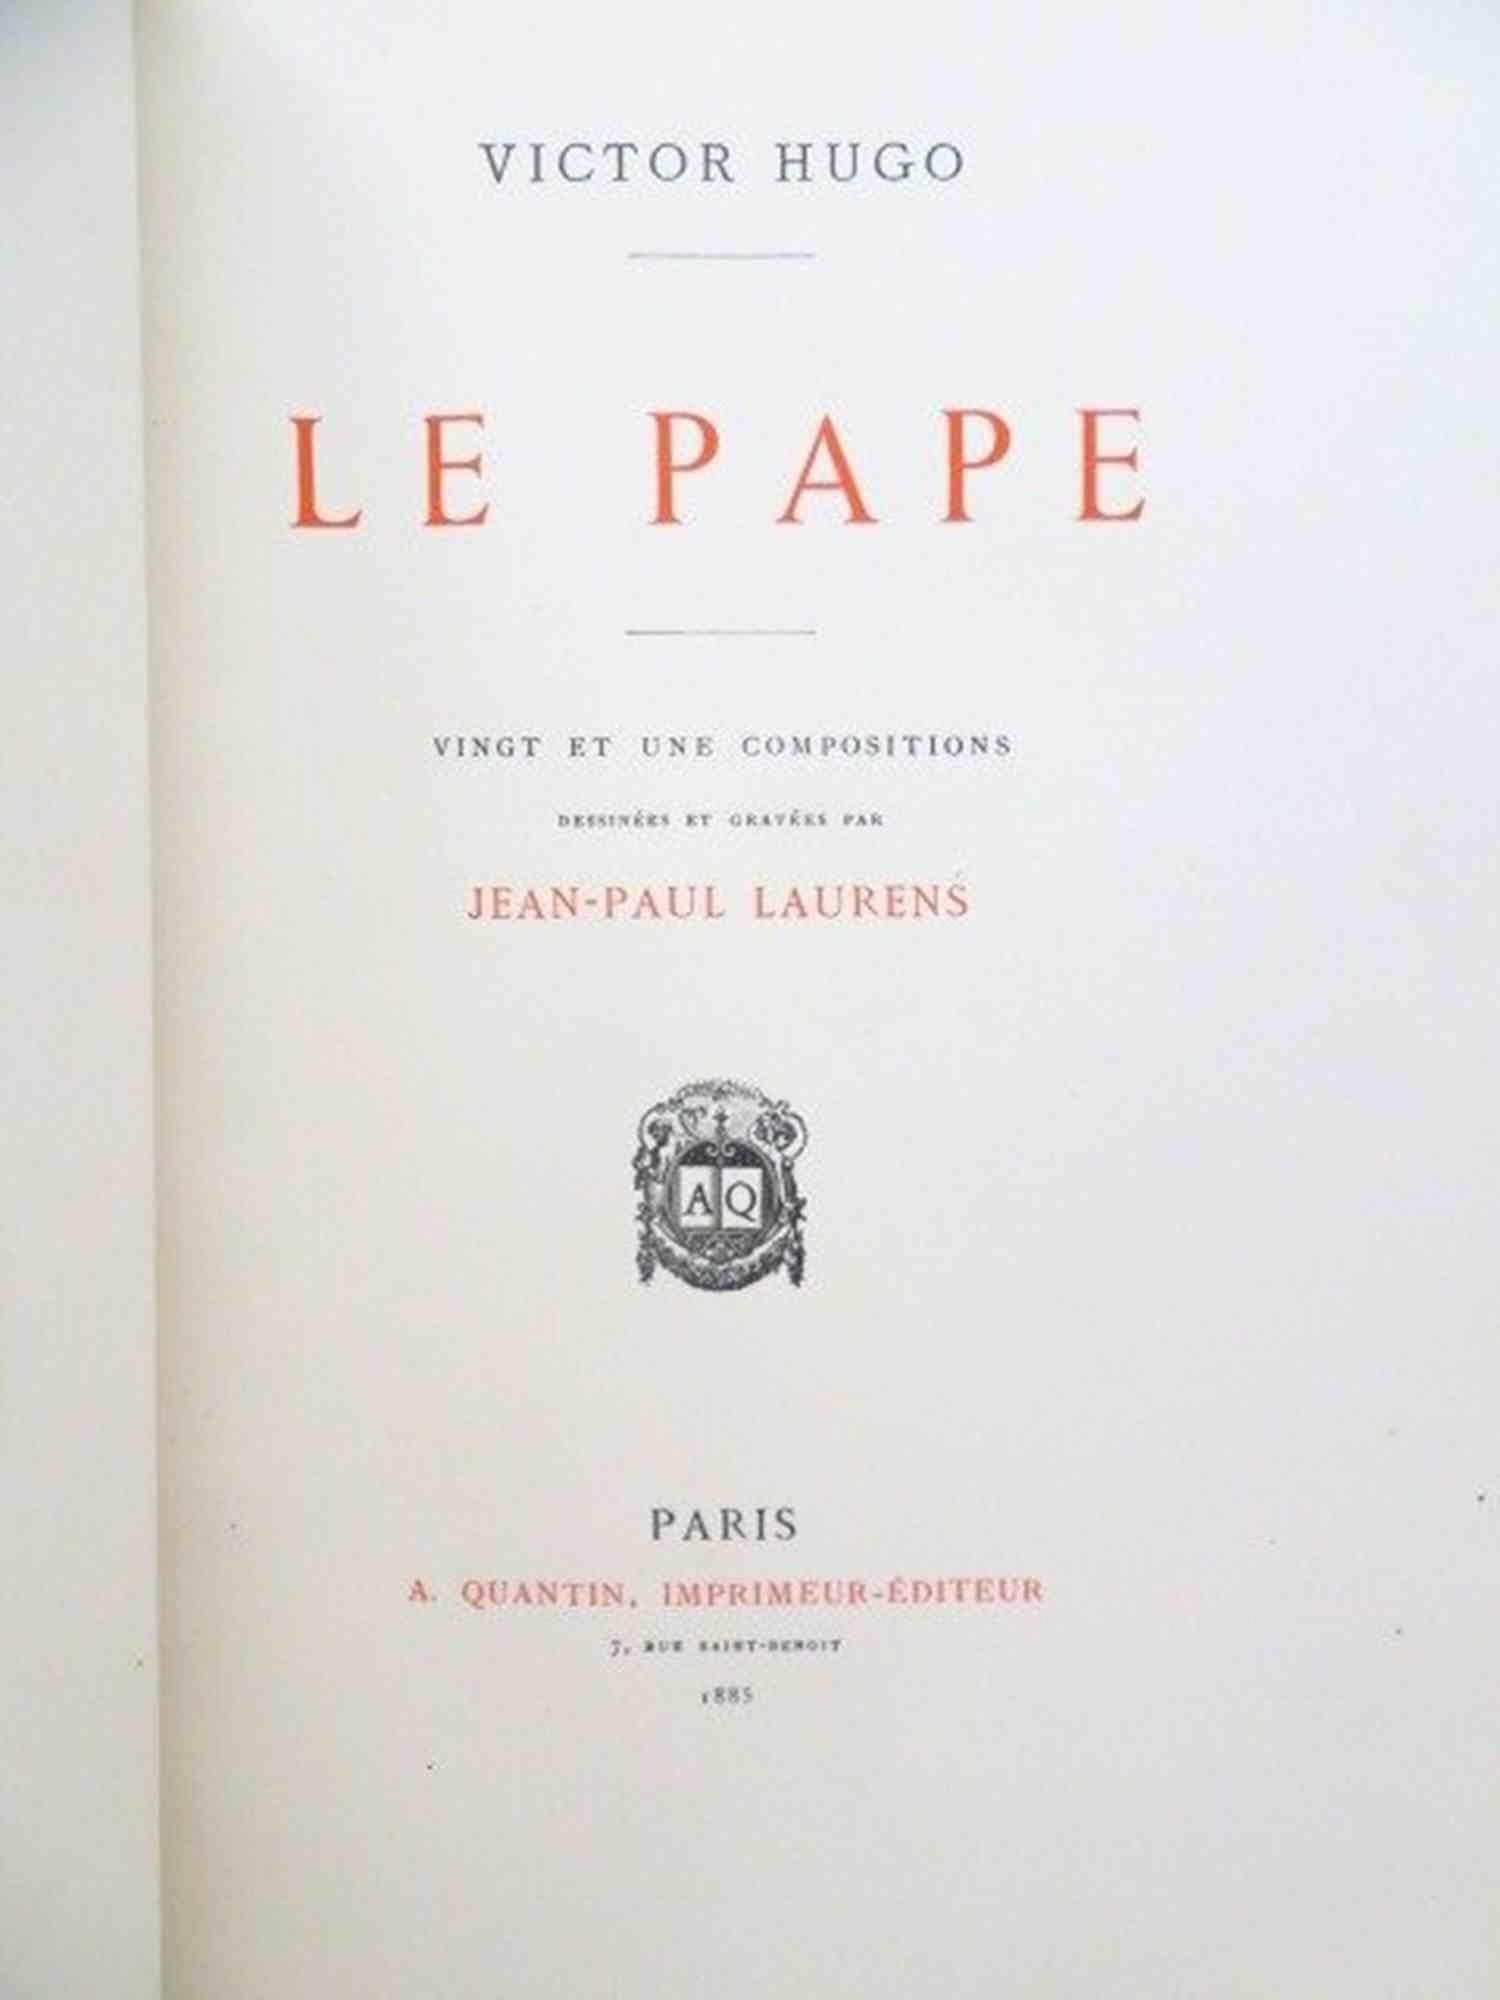 Le Pape ist ein seltenes Buch von Victor Hugo aus dem Jahr 1885.

Herausgegeben von Quantin - Paris

Originalausgabe mit den Radierungen von Jean Paul Laurens von 300 nummerierten Exemplaren (dieses ist eines von 100 auf Whatman-Papier, Nr. 95) in